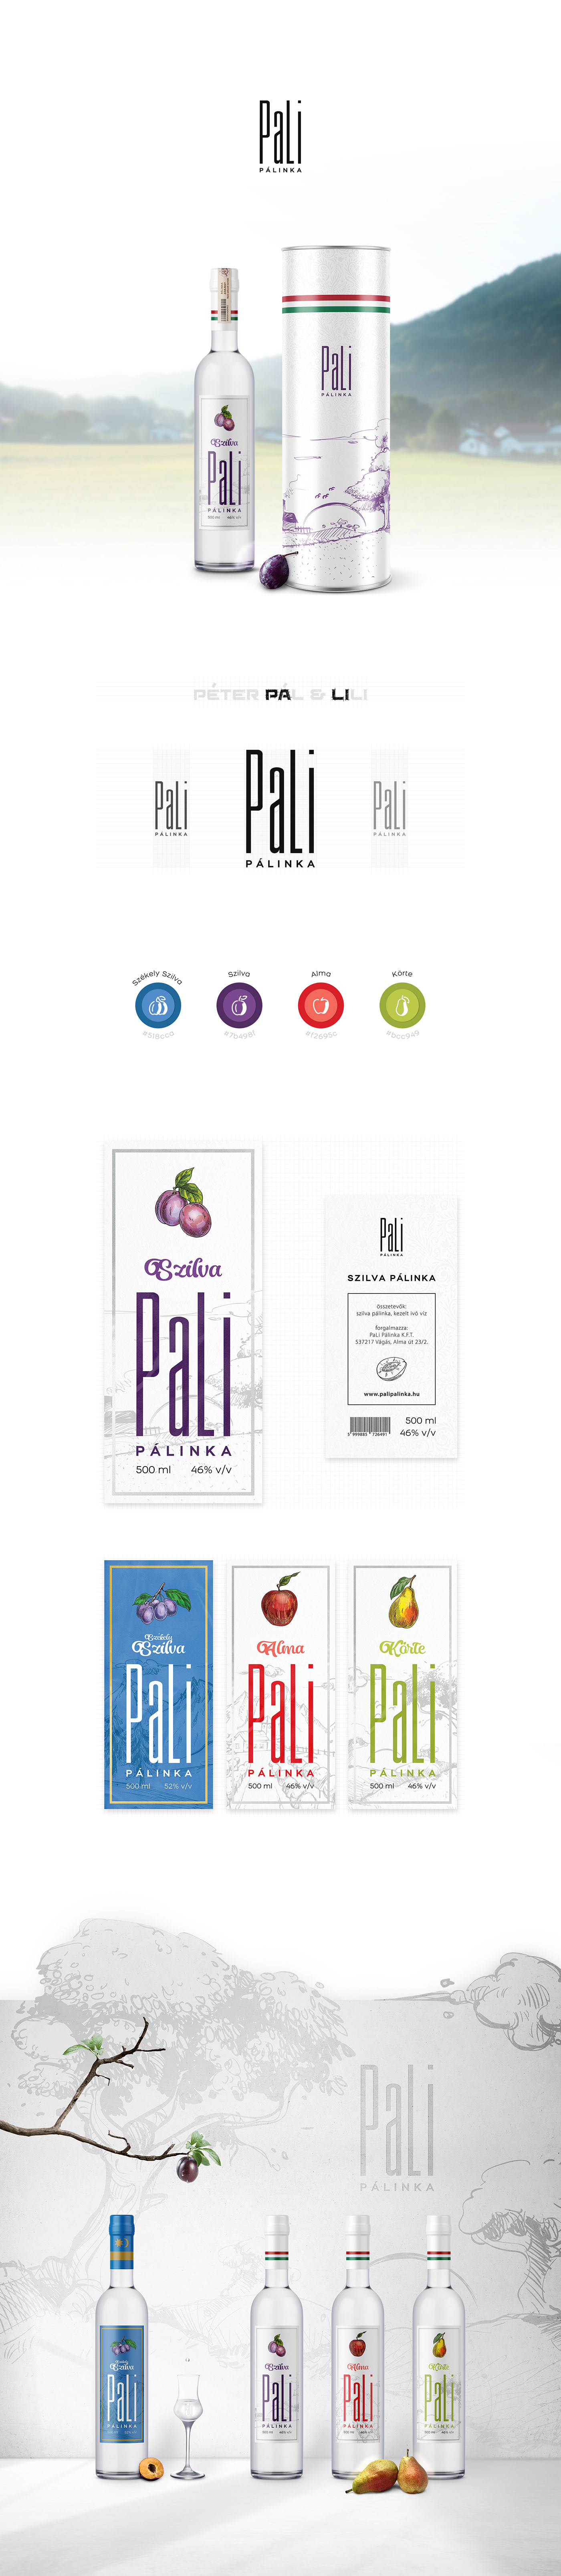 Brandy label design Packaging design Label